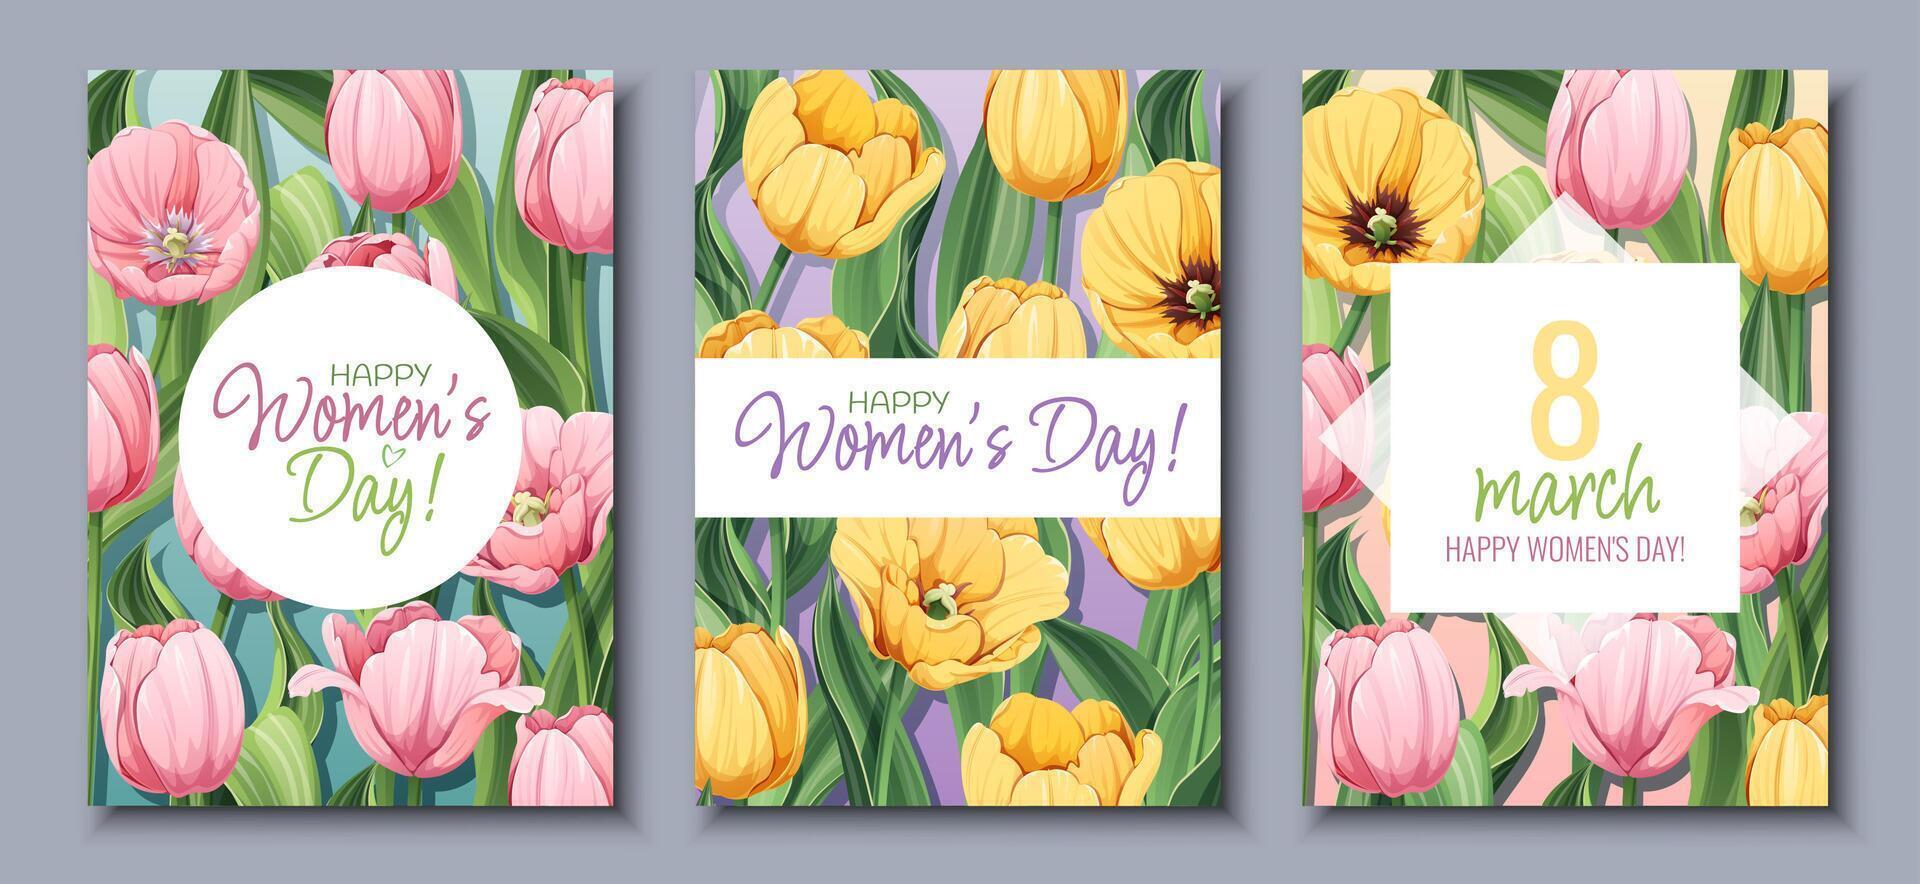 uppsättning av hälsning kort för internationell kvinnor s dag. affisch med gul och rosa tulpaner för Mars 8:a. vektor mall med vår bukett